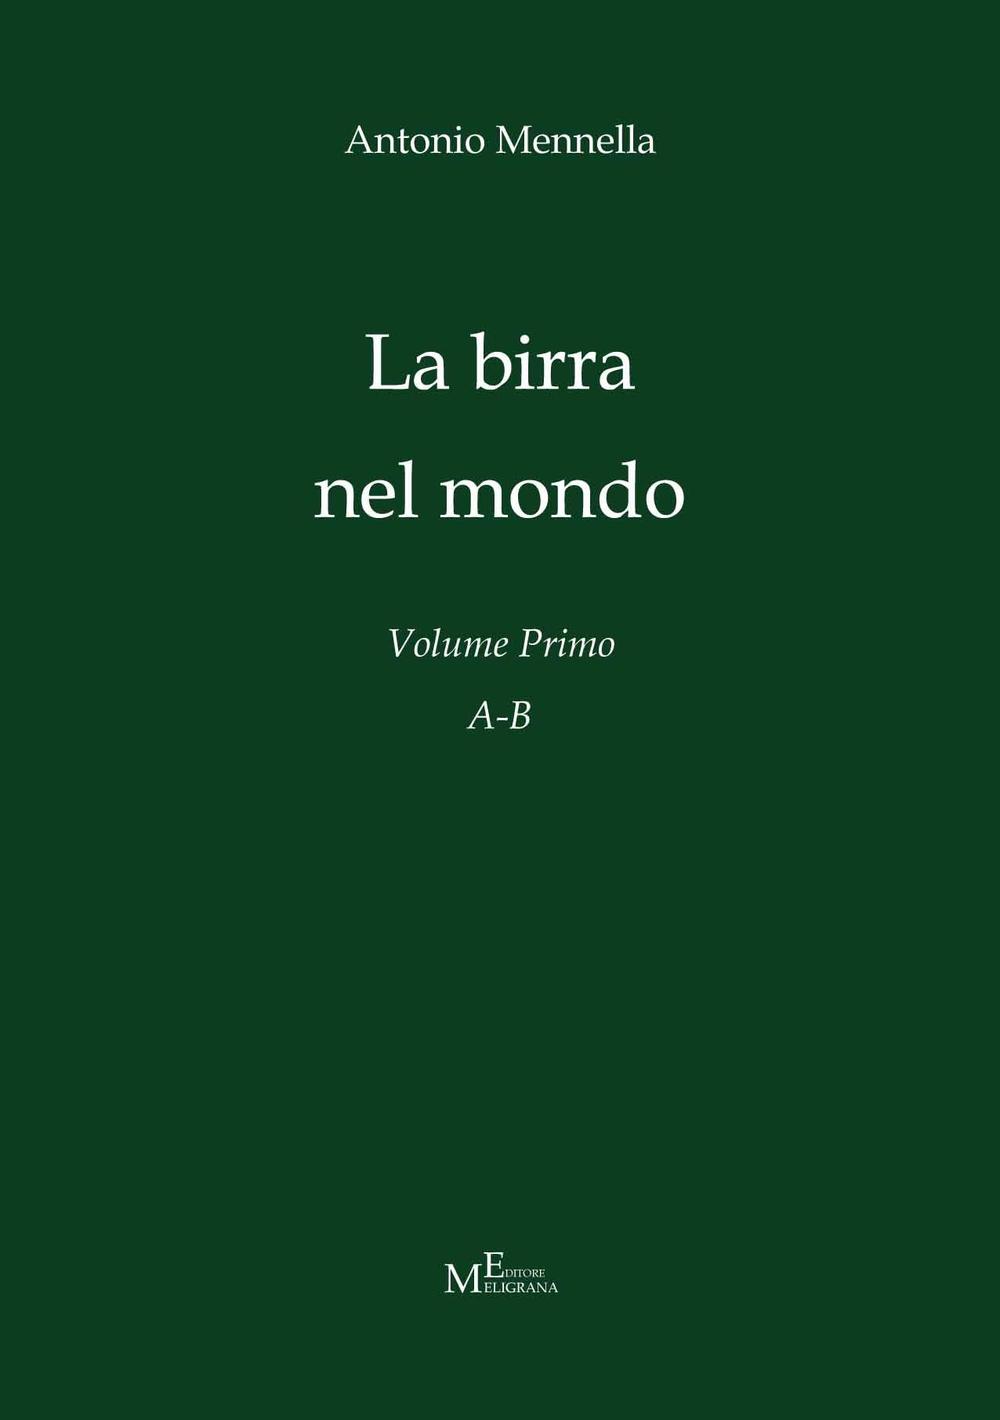 Libri Antonio Mennella - La Birra Nel Mondo. Vol. 1: A-B NUOVO SIGILLATO, EDIZIONE DEL 17/12/2016 SUBITO DISPONIBILE